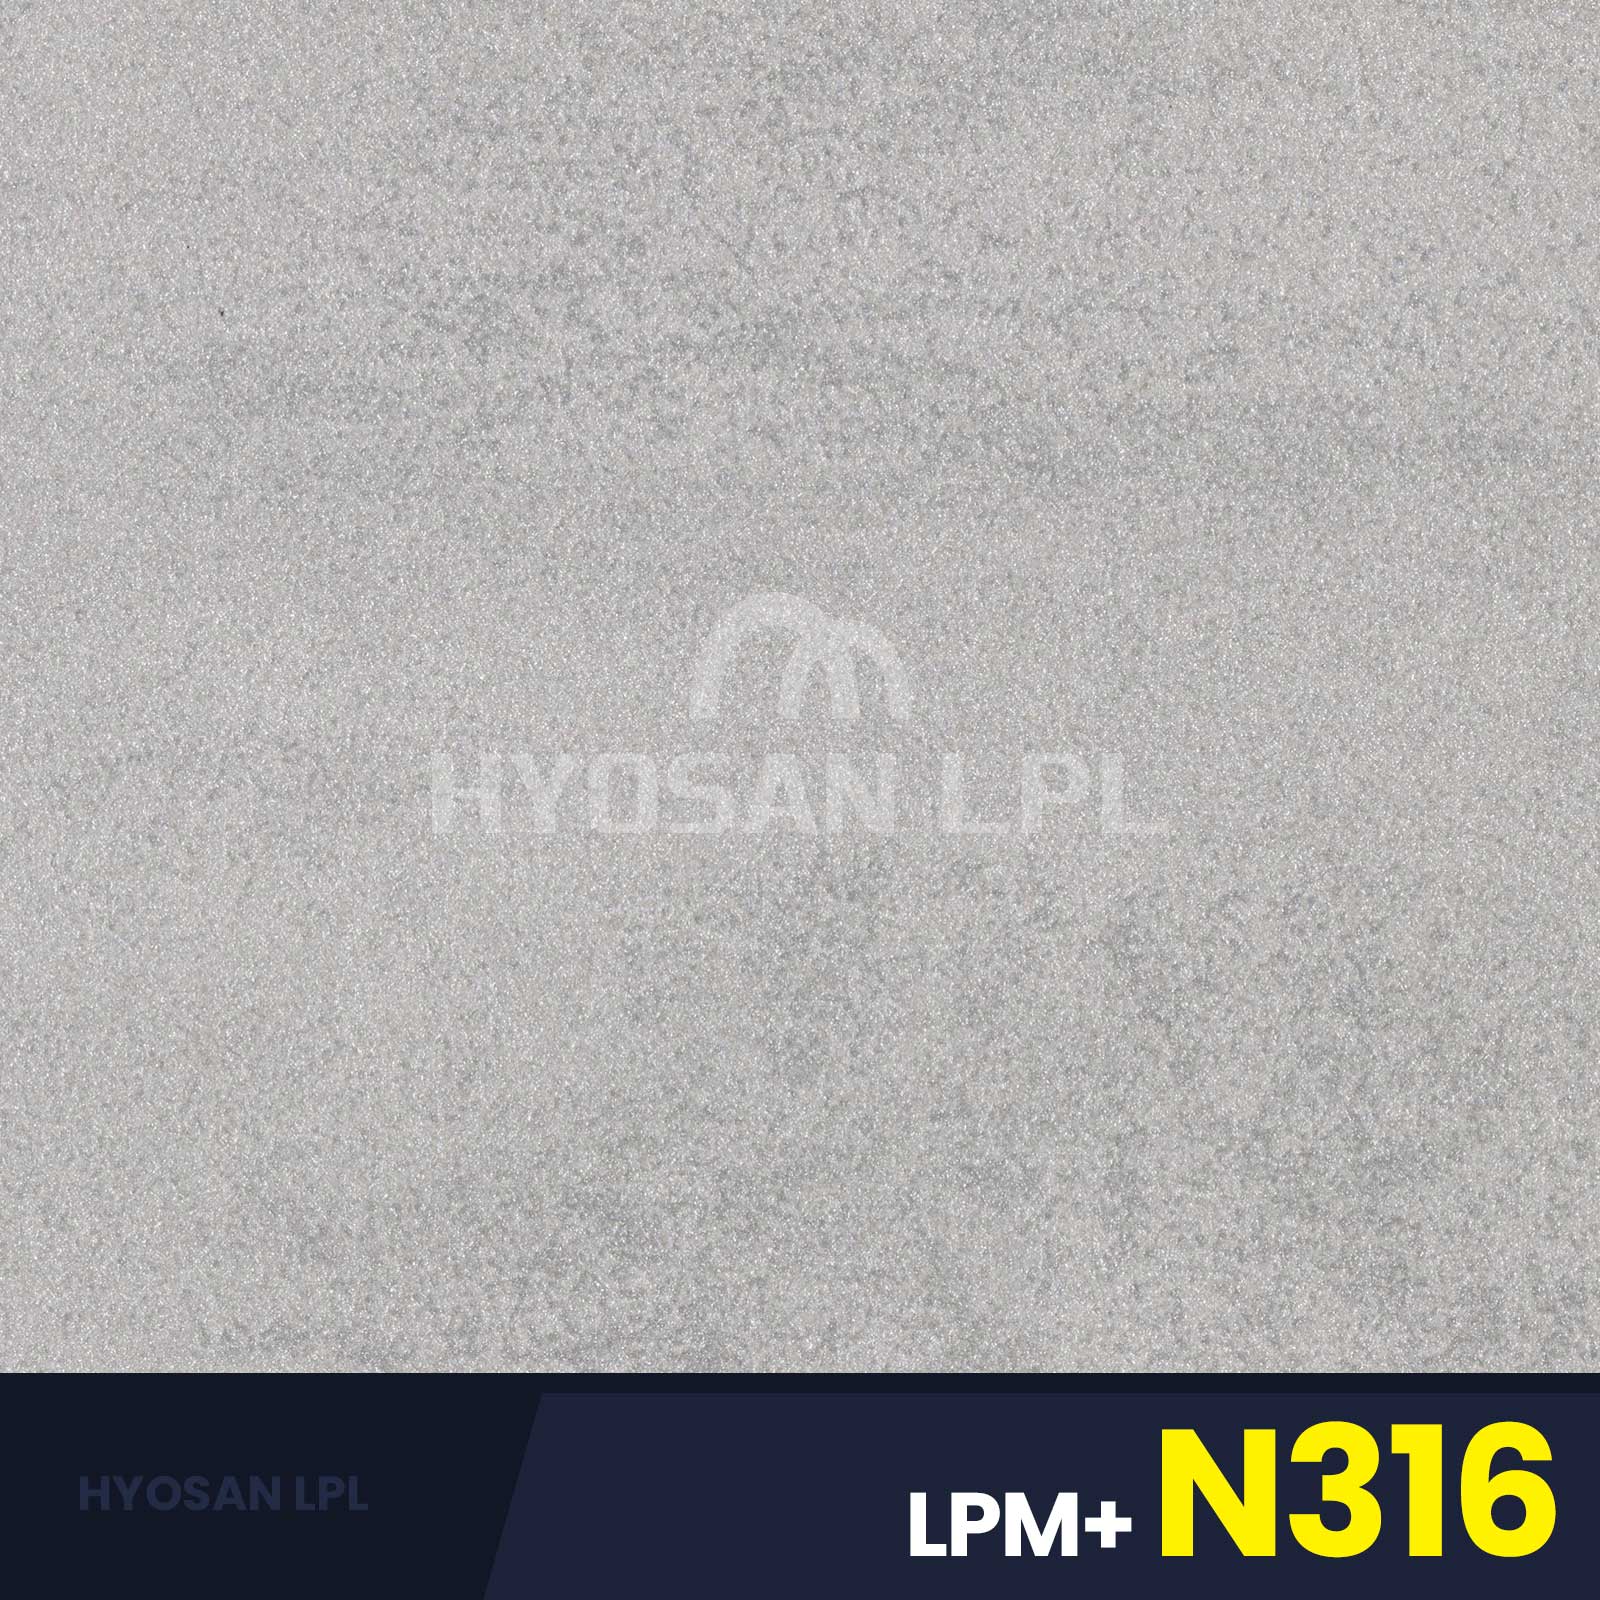 LPM+N316